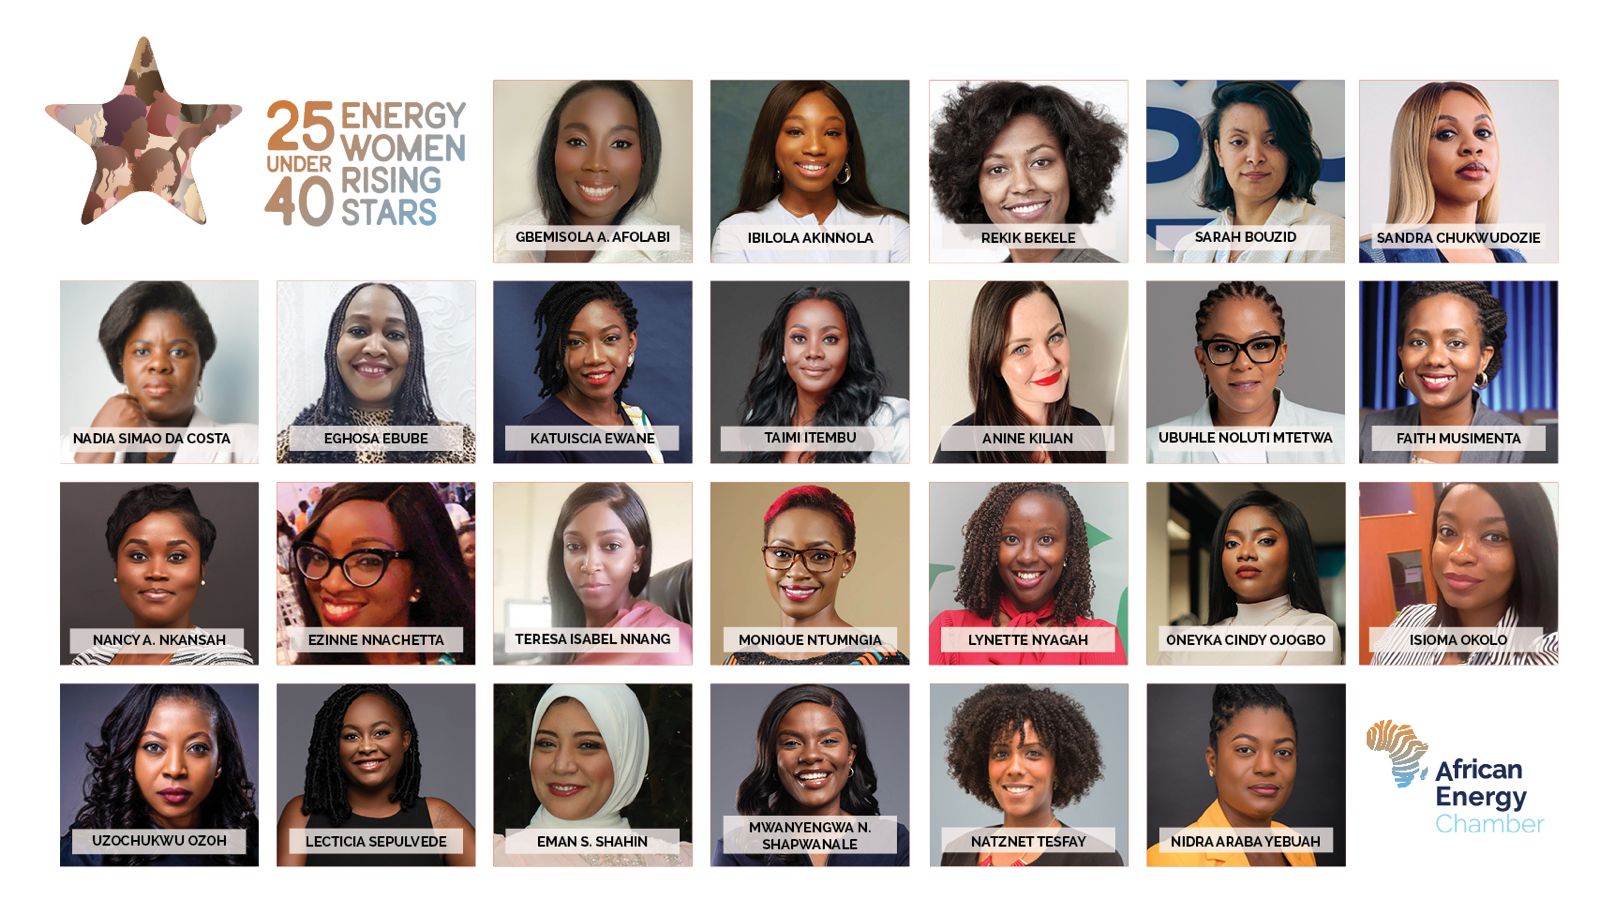 25 Under 40 Energy Ladies Rising Stars: Rekik Bekele